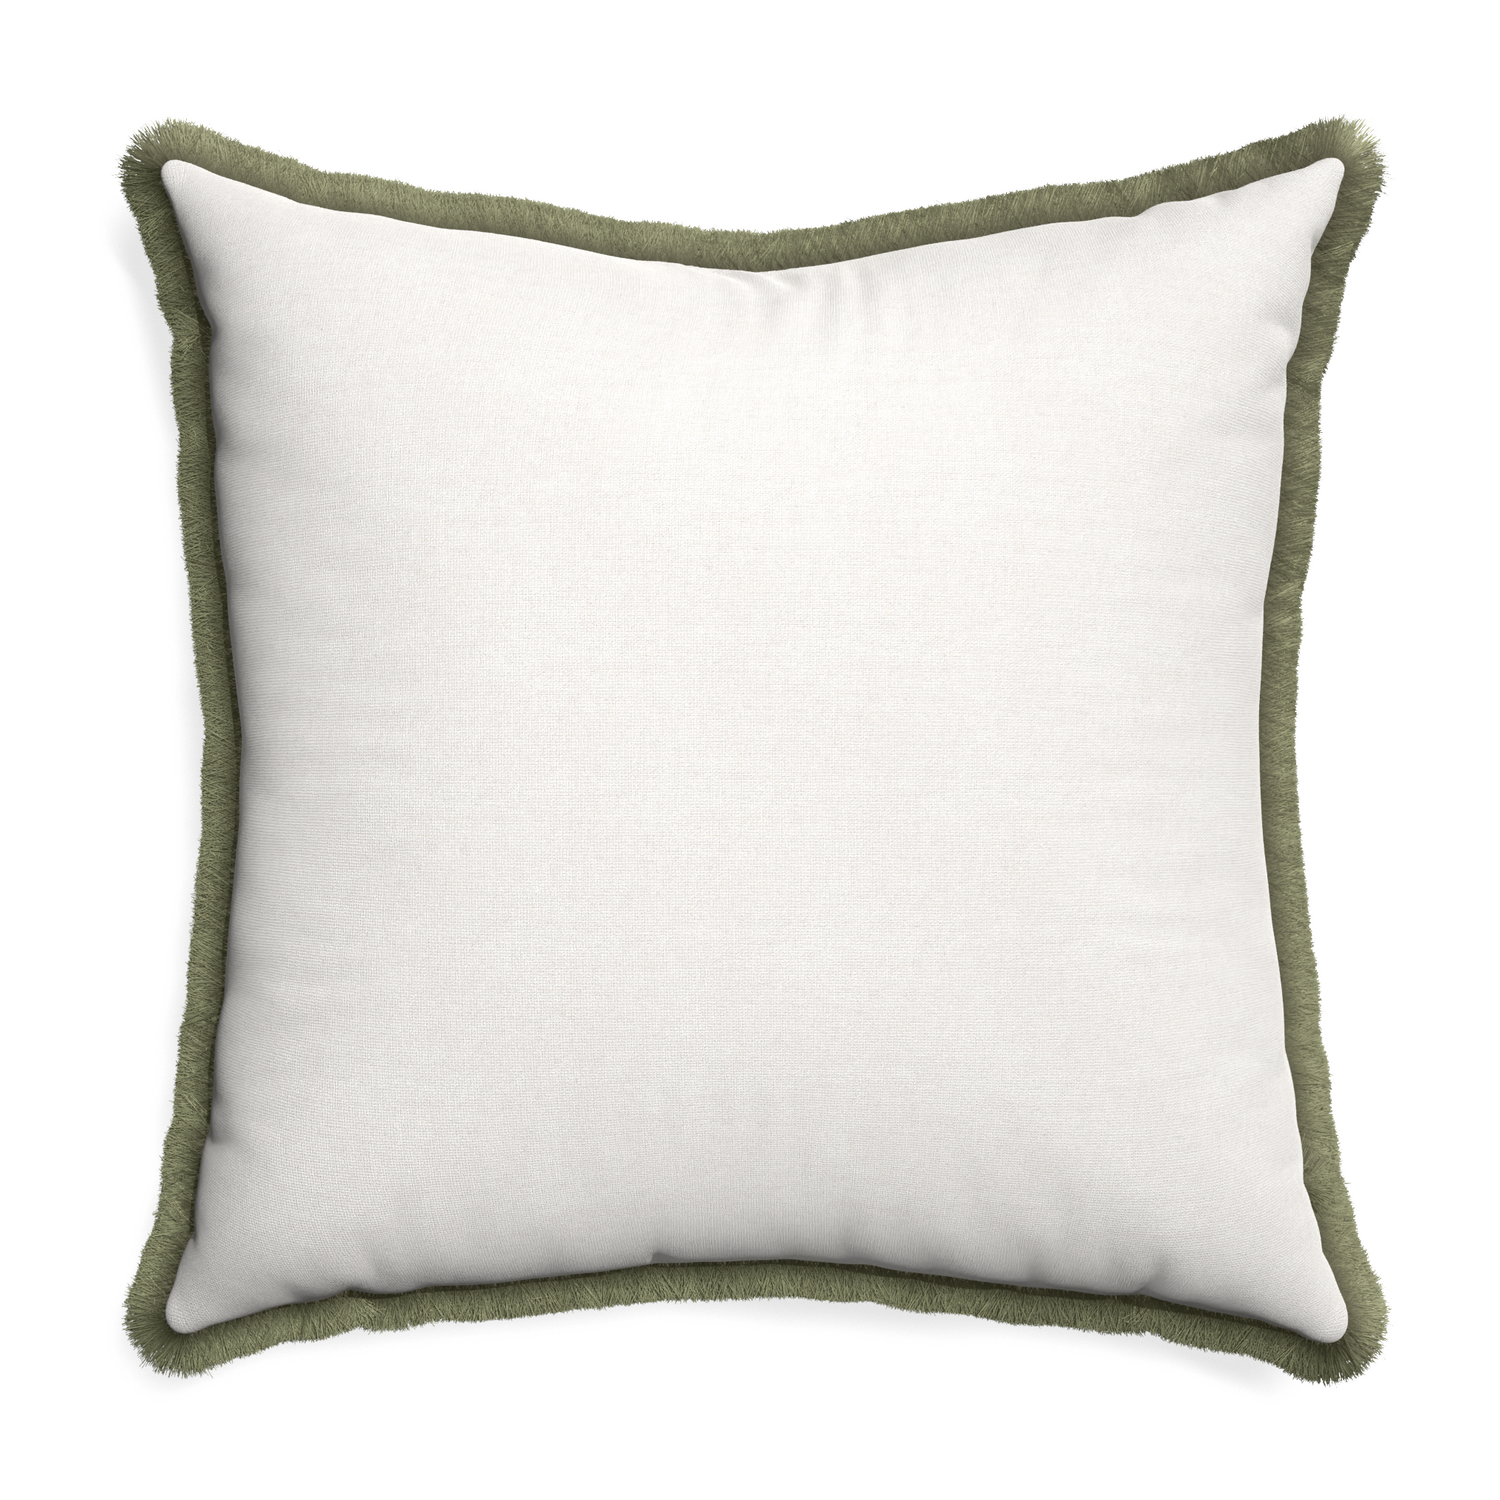 Euro-sham flour custom pillow with sage fringe on white background